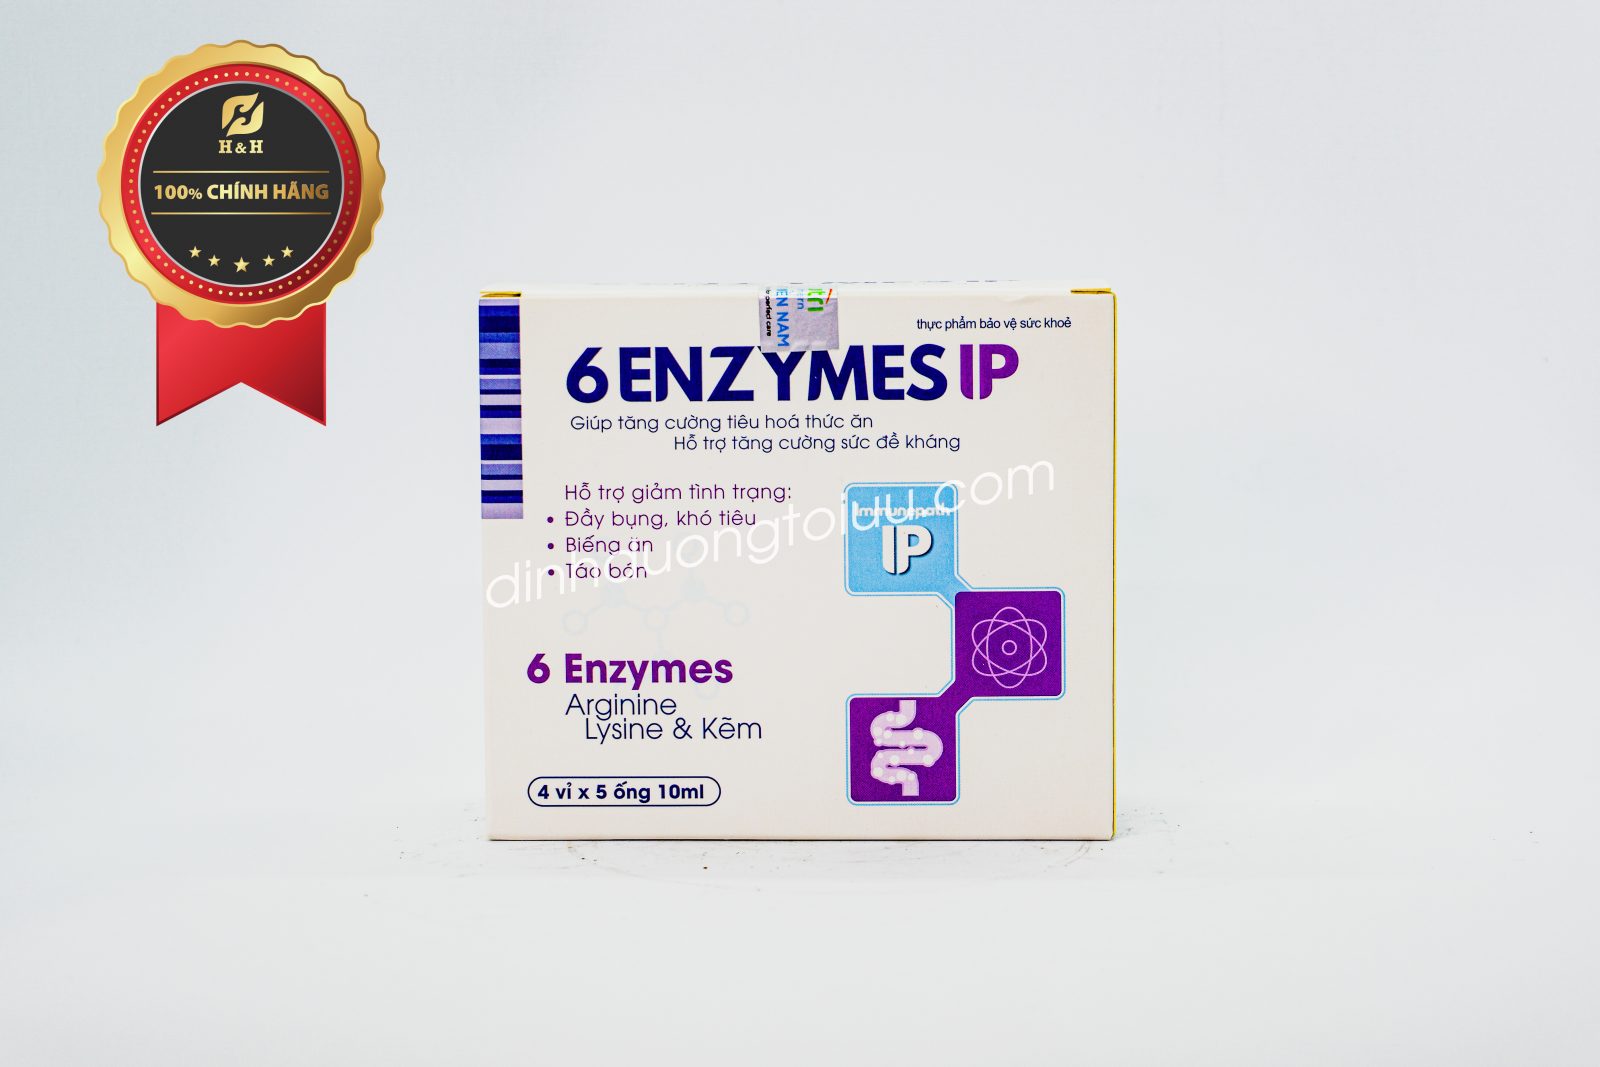 Men tiêu hóa 6 Enzymes IP đem lại nhiều lợi ích cho sức khỏe